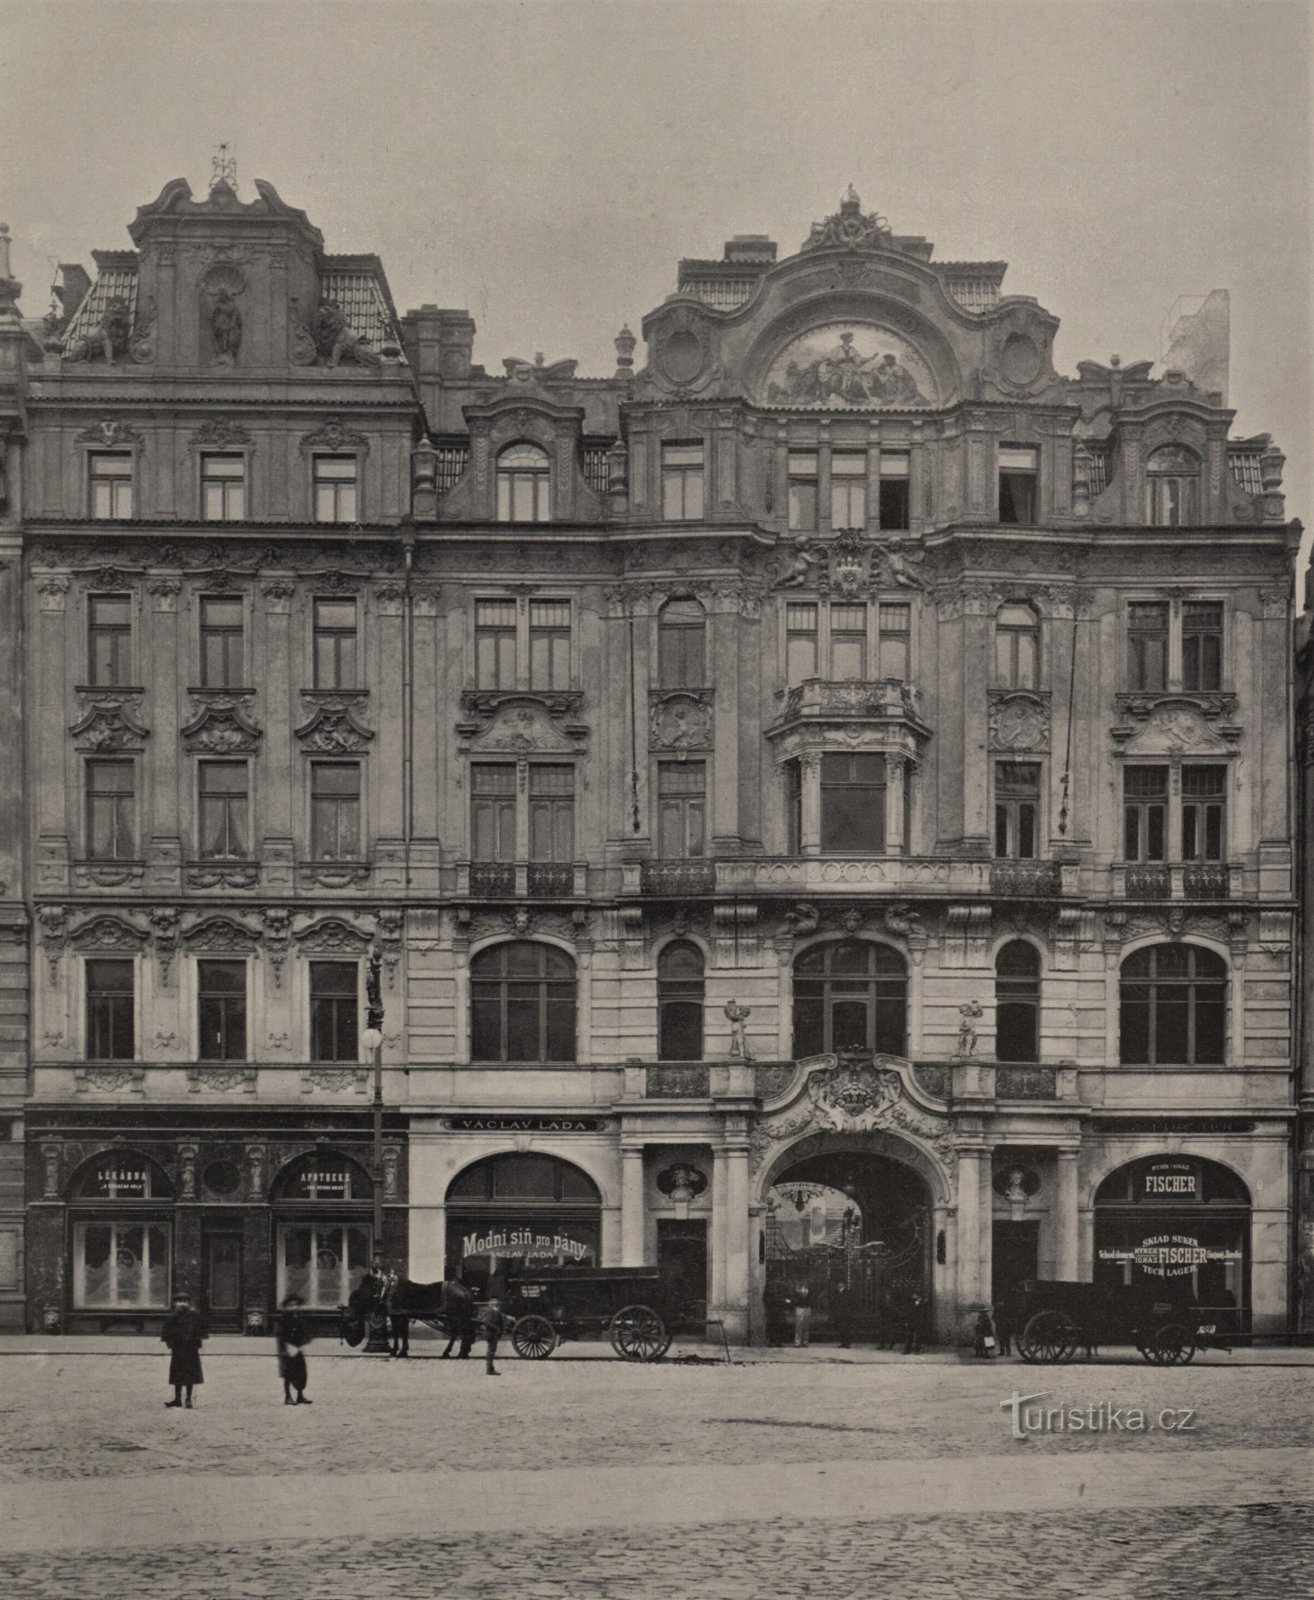 932 年布拉格市政保险公司第 1902 号宫殿